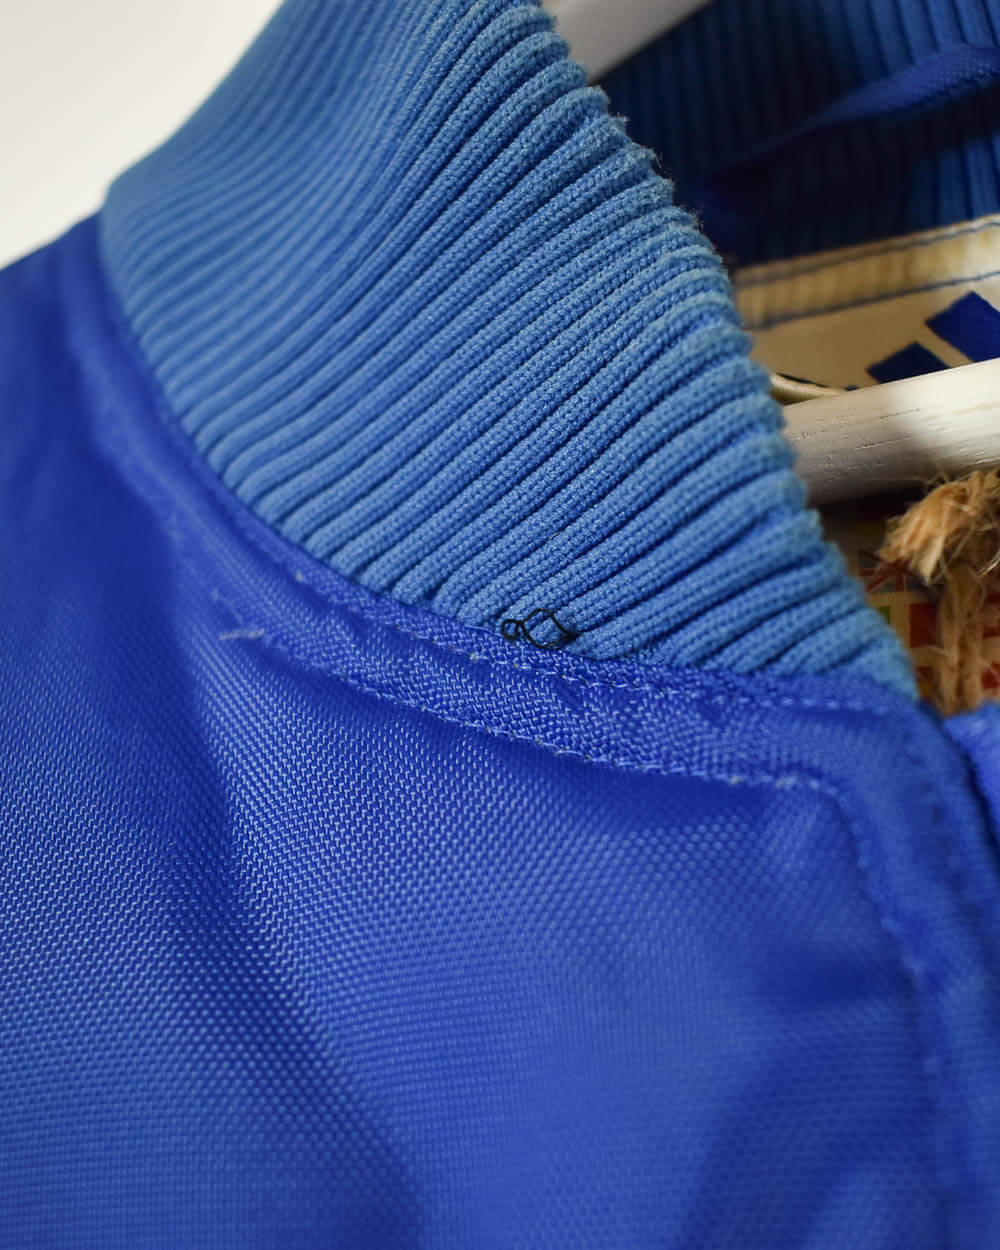 Blue Adidas Puffer Jacket - Large